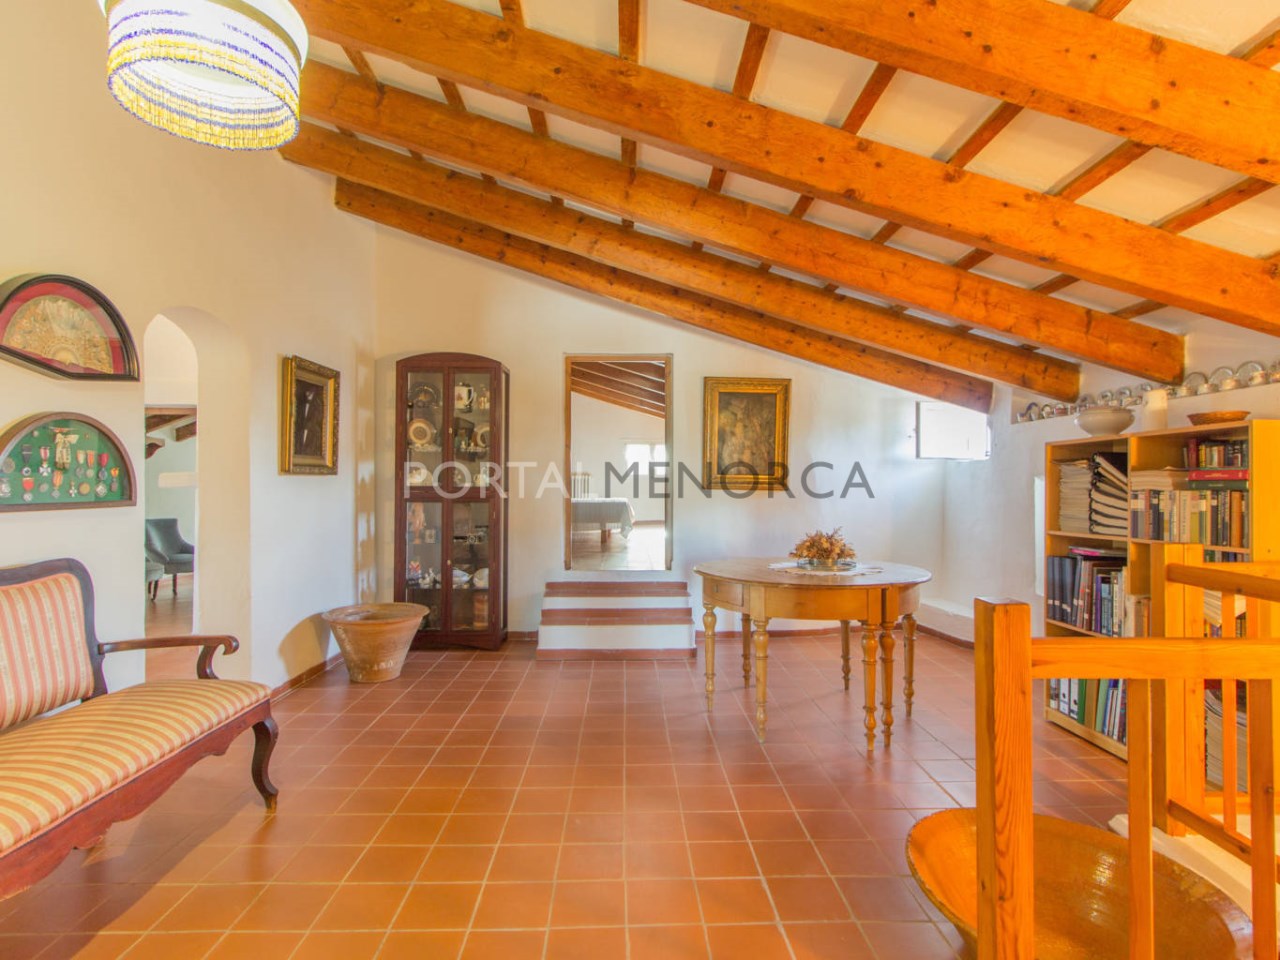 Casa de campo en venta en Menorca - Planta primera (9)